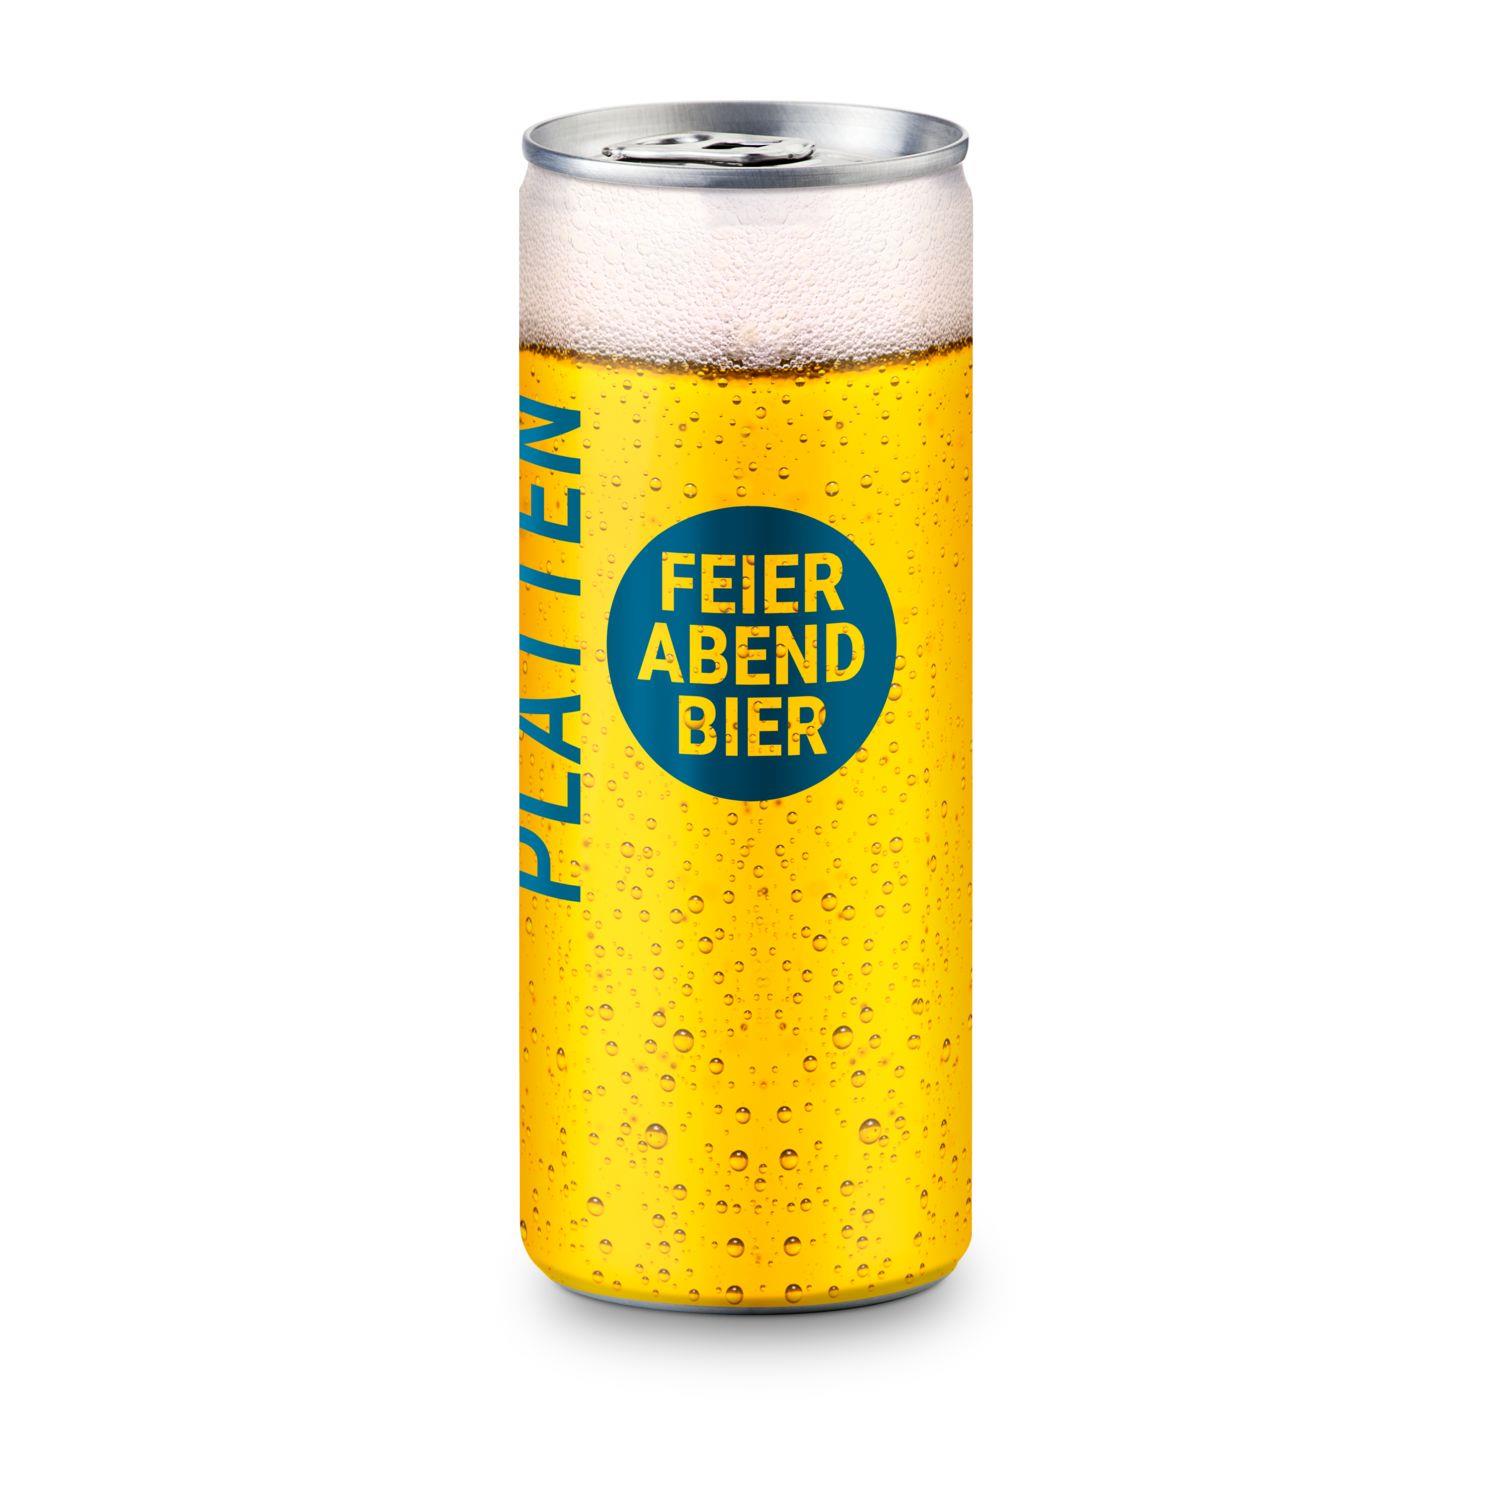 Helles Bier - feinherb und leicht malzig - Fullbody